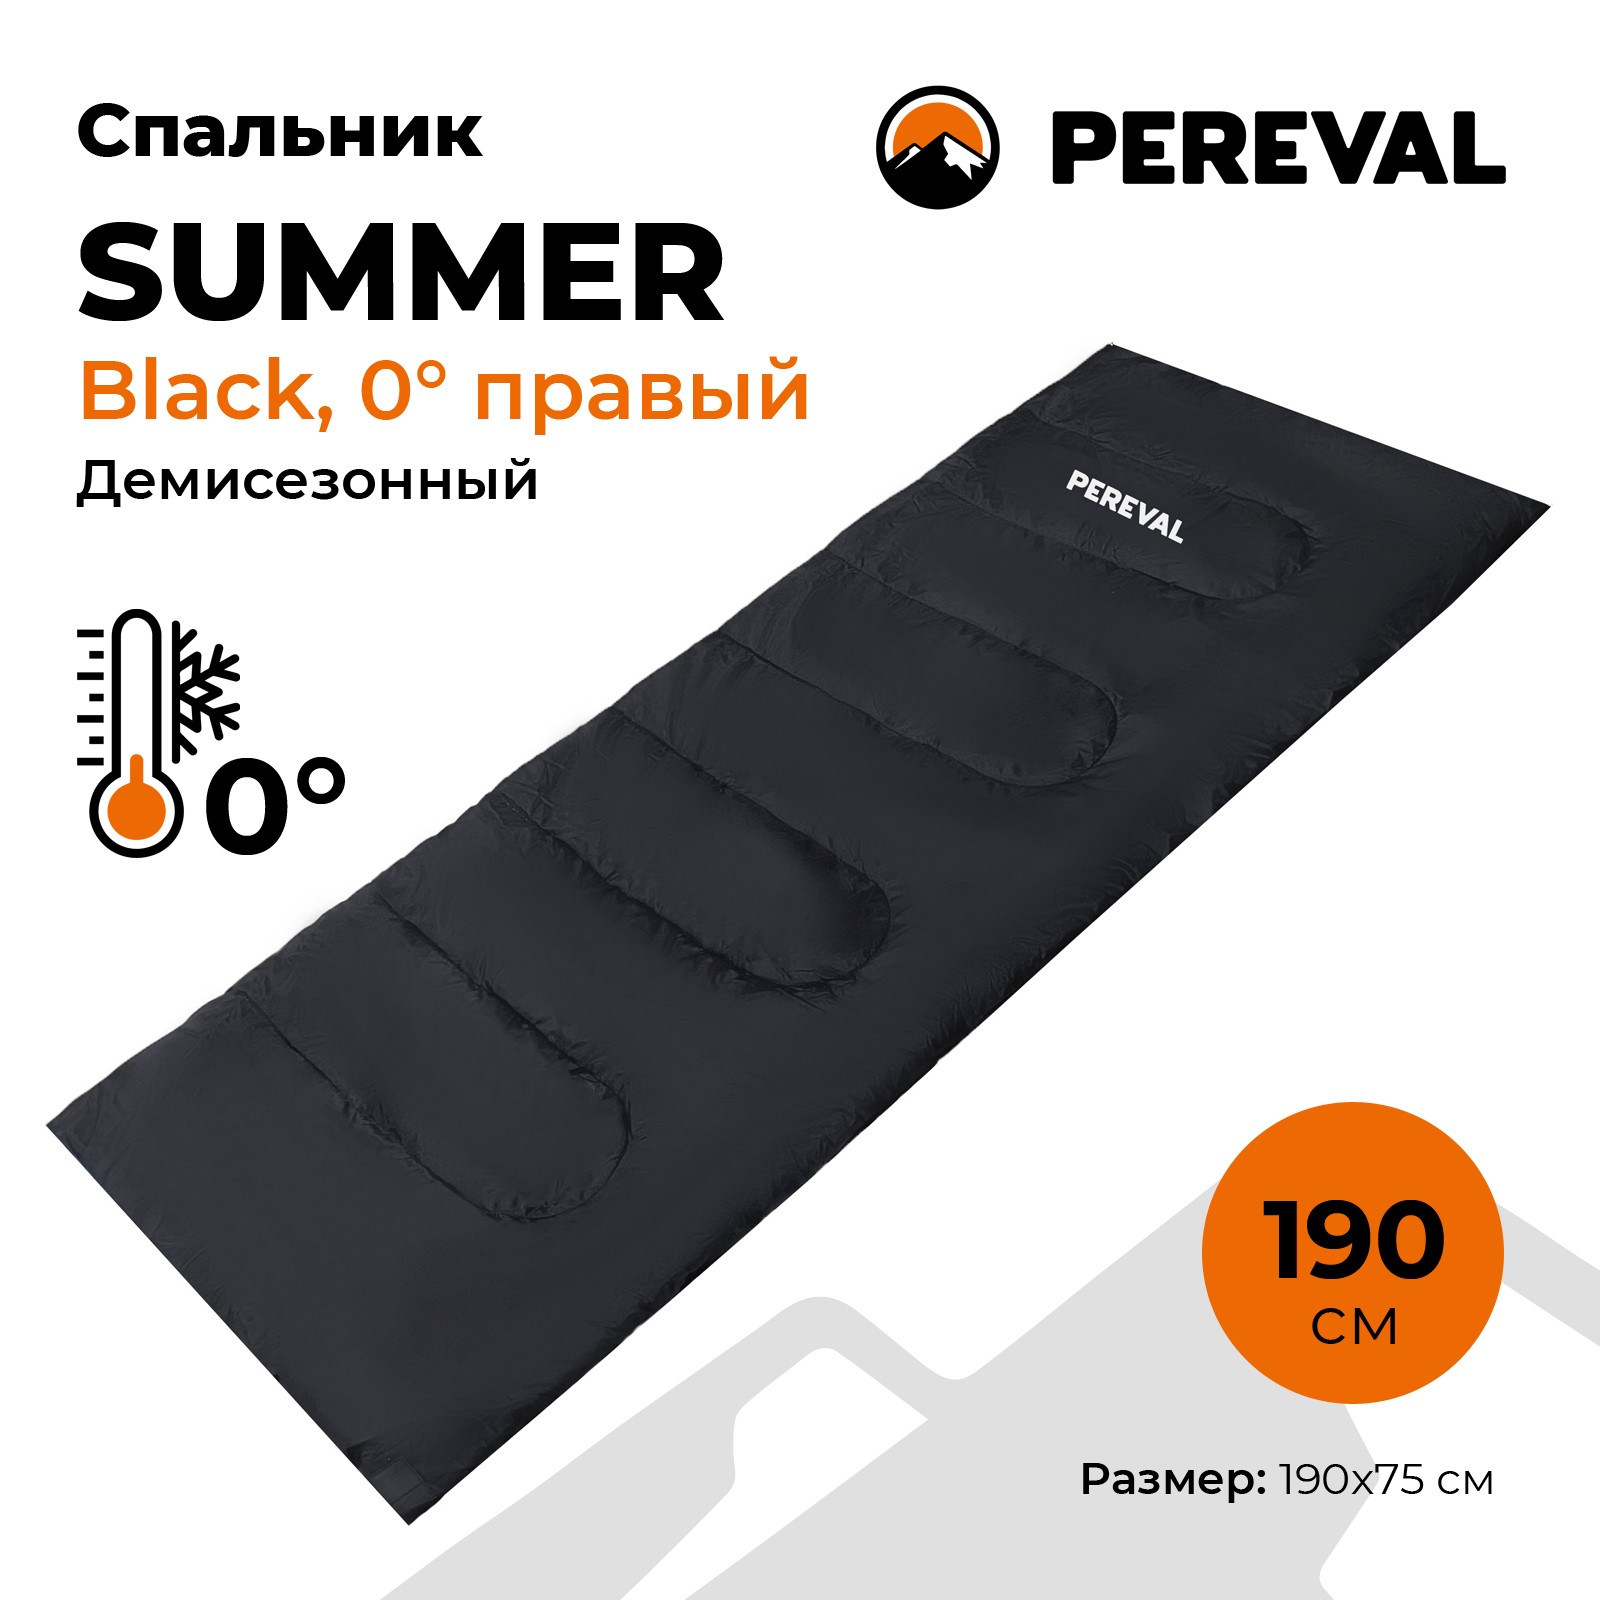 Спальник Pereval Summer Black 0° правый - фото 1